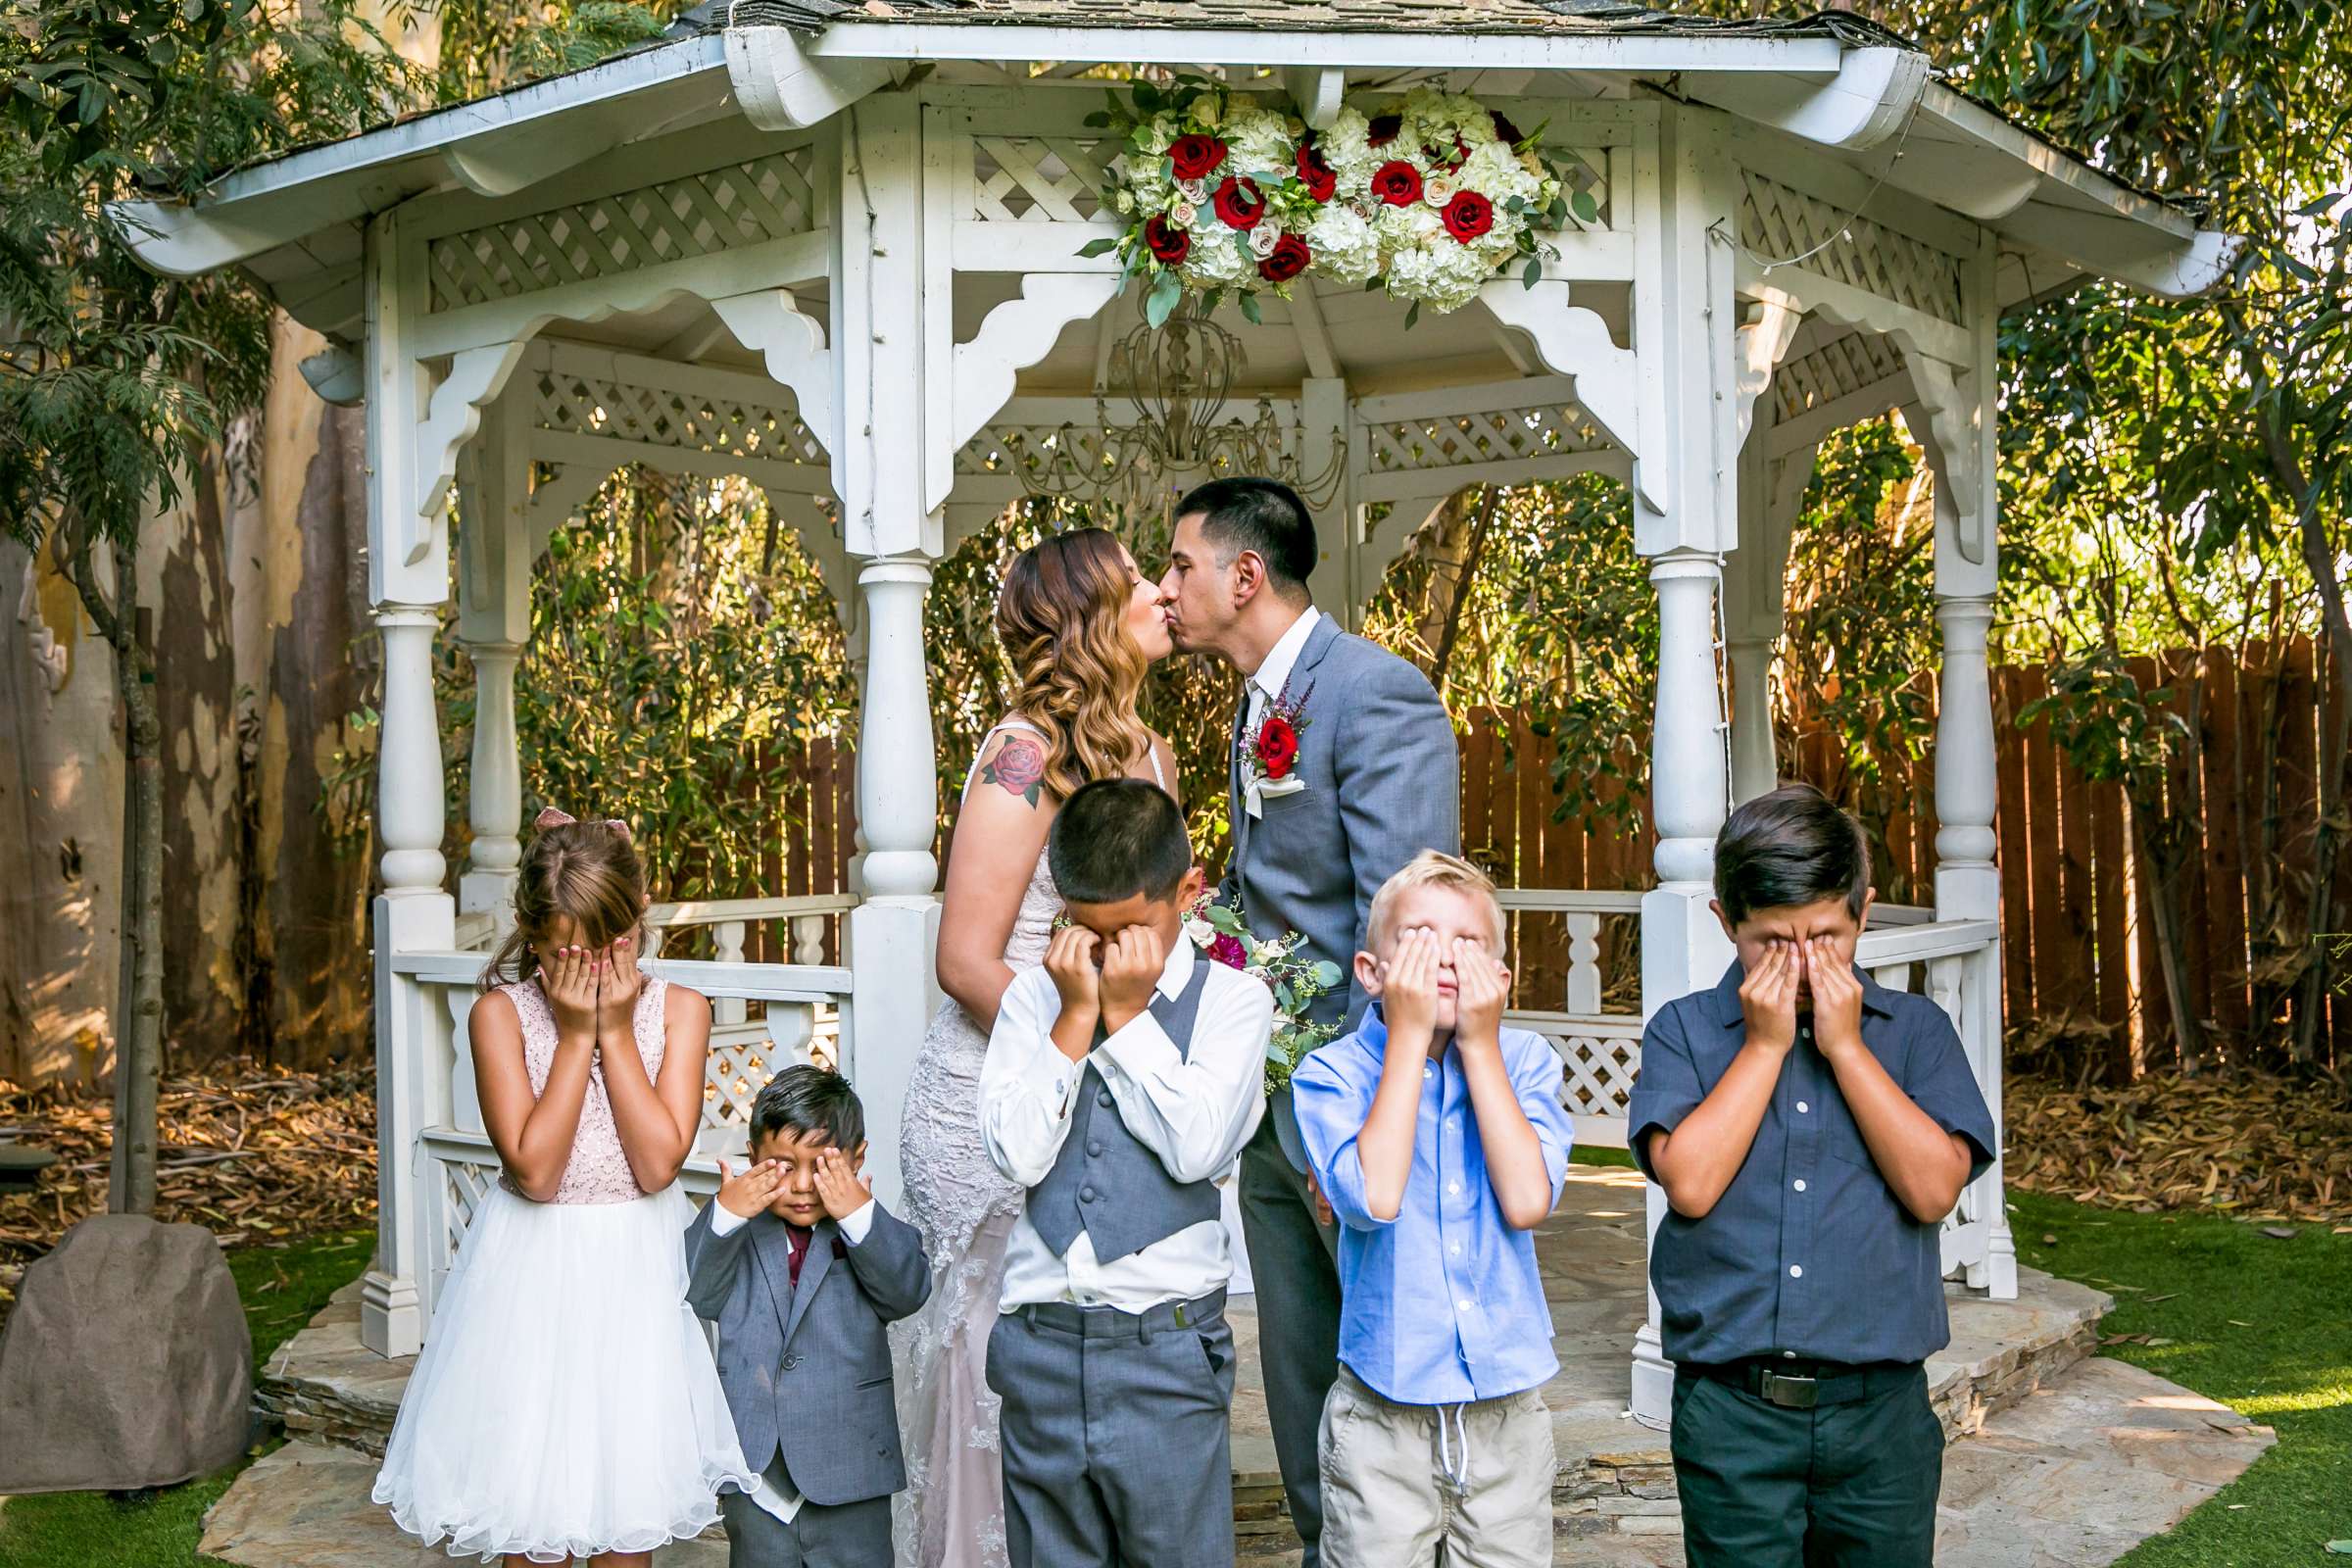 Twin Oaks House & Gardens Wedding Estate Wedding, Merrilynn and Trey Wedding Photo #13 by True Photography